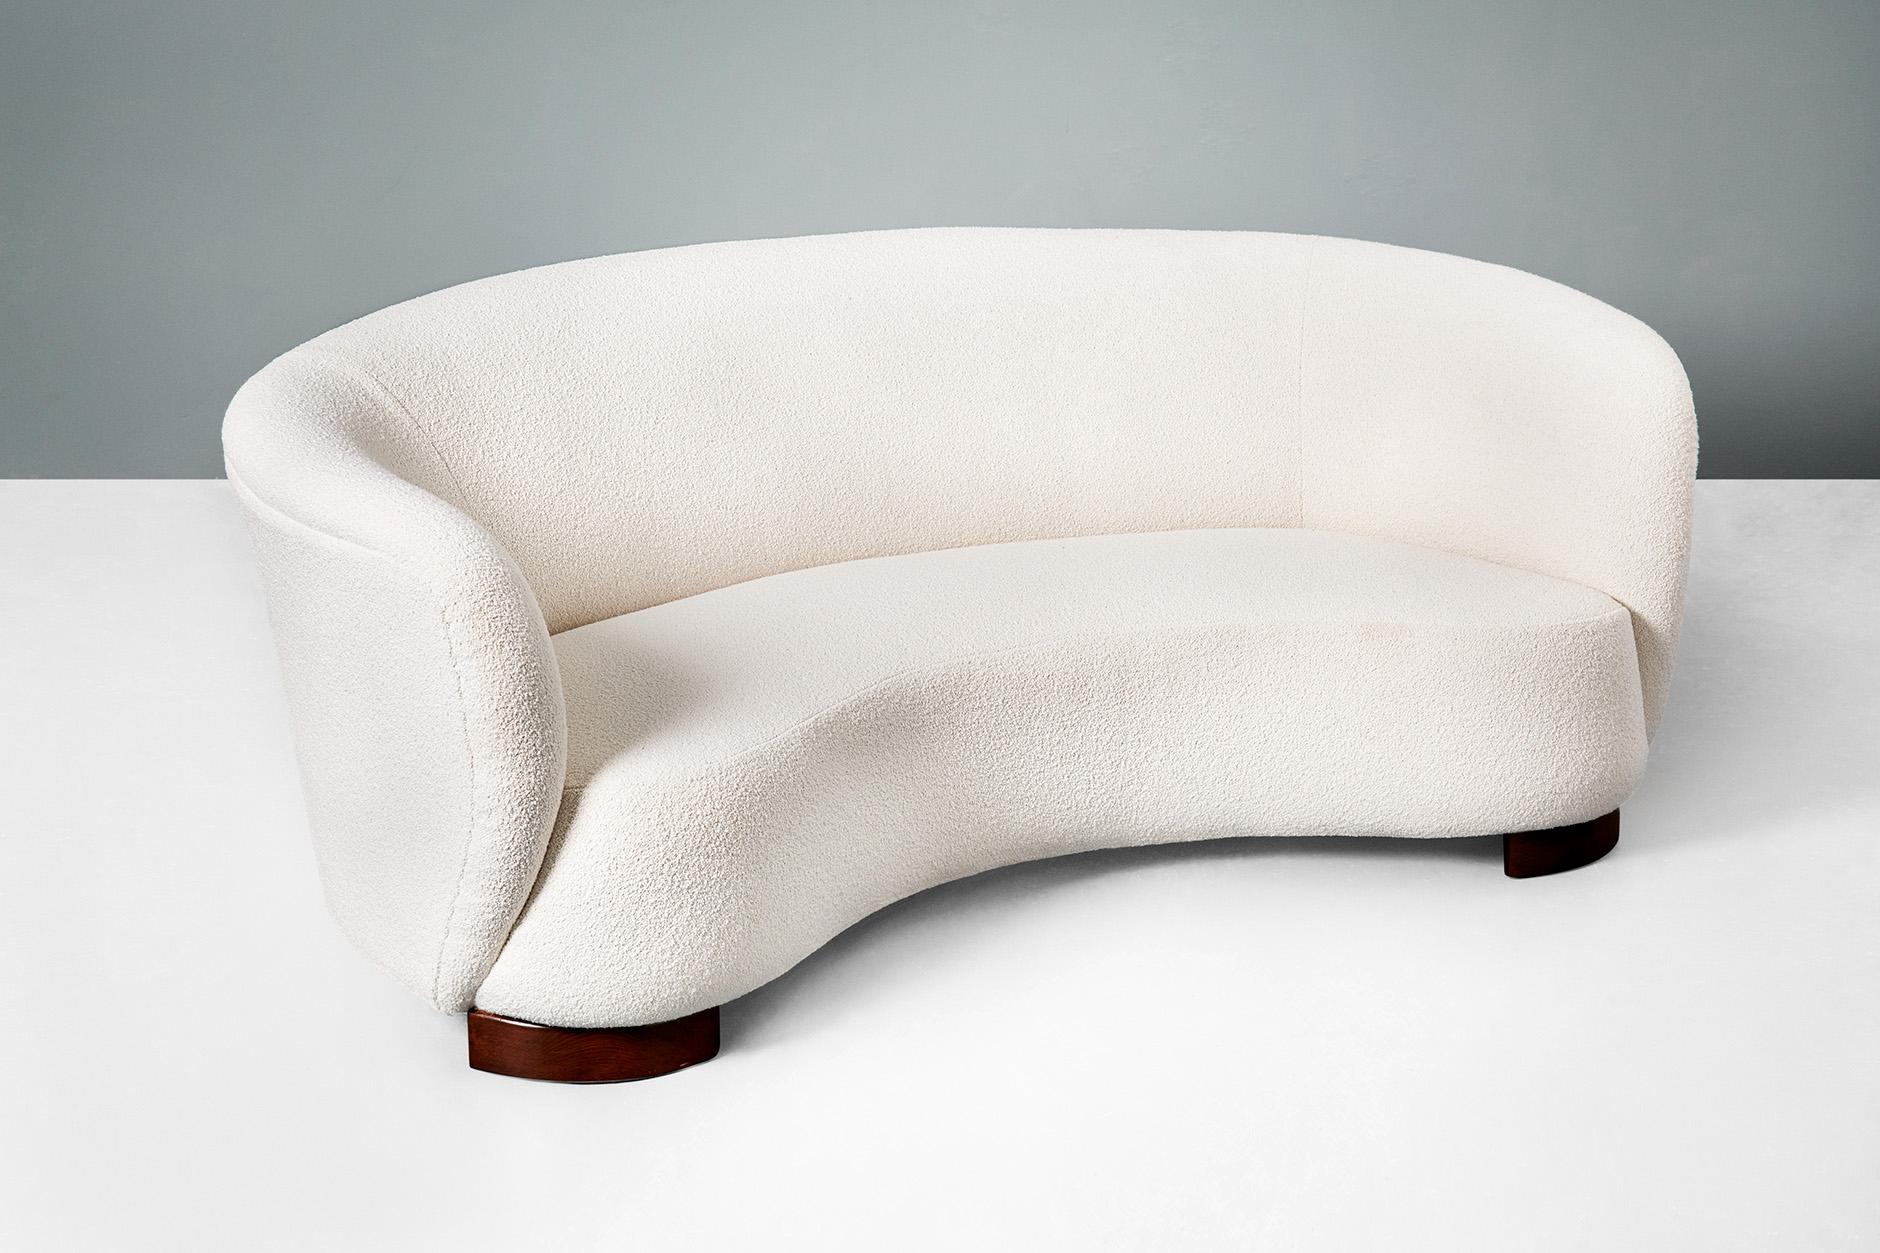 Dänischer Möbelschreiner

Geschwungenes Sofa, 1940er Jahre.

Gebogenes Sofa, hergestellt in Dänemark in den 1940er Jahren. Das Sofa hat dicke, gebeizte Buchenholzbeine und wurde mit einem Bouclé-Stoff aus einer Baumwoll-Wollmischung von Chase